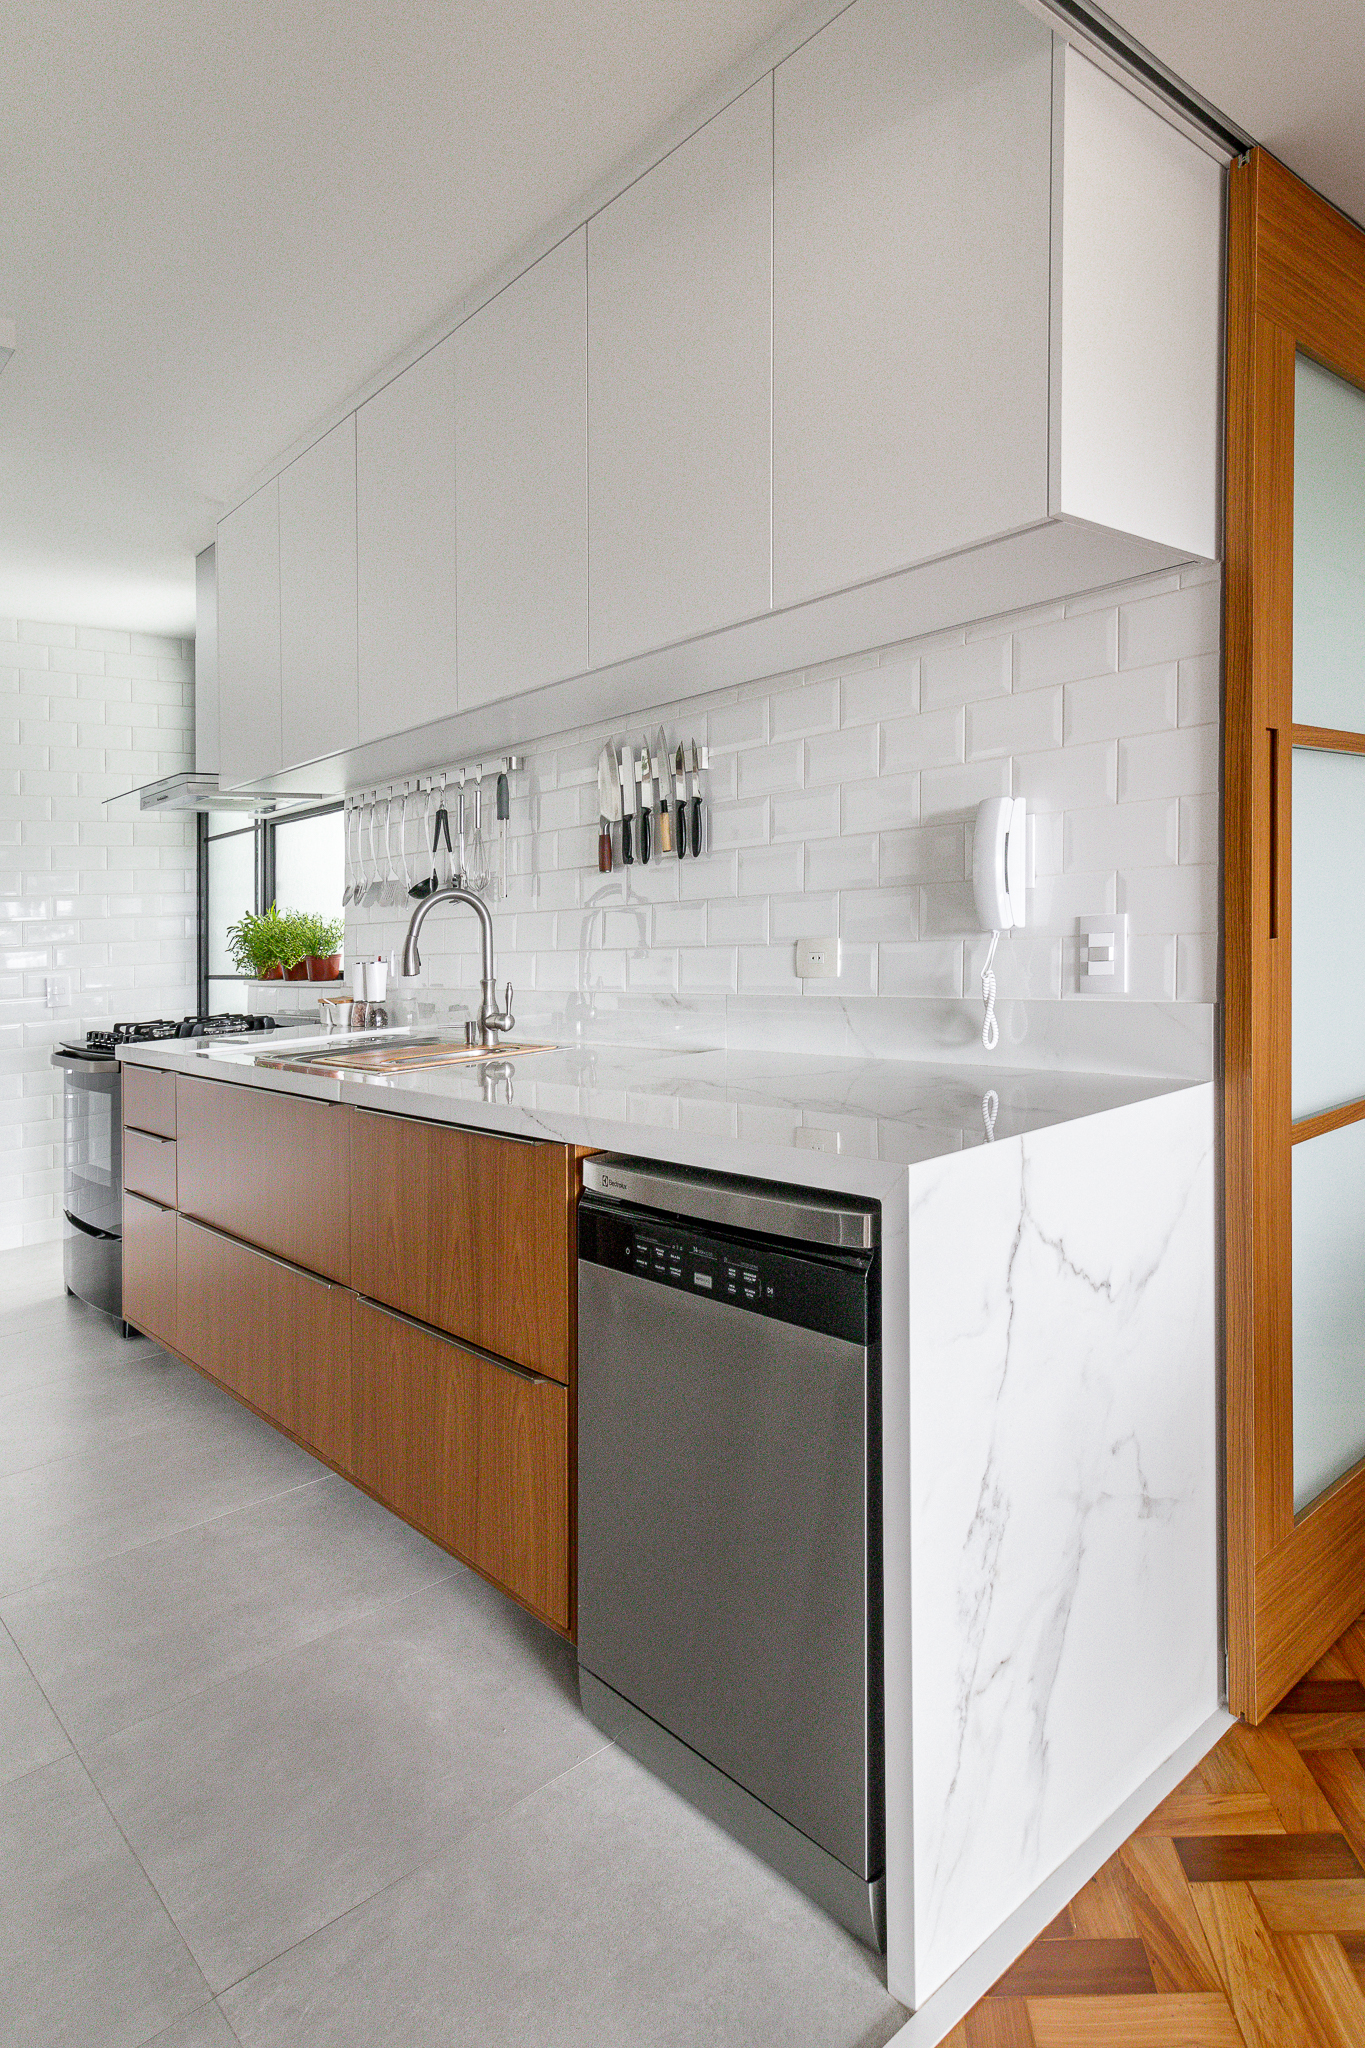 Cozinha minimalista foi pensada para abrigar muitos utensílios. Projeto de Inovando Arquitetura. Na foto, bancada de cozinha em lâmina marmorizada.